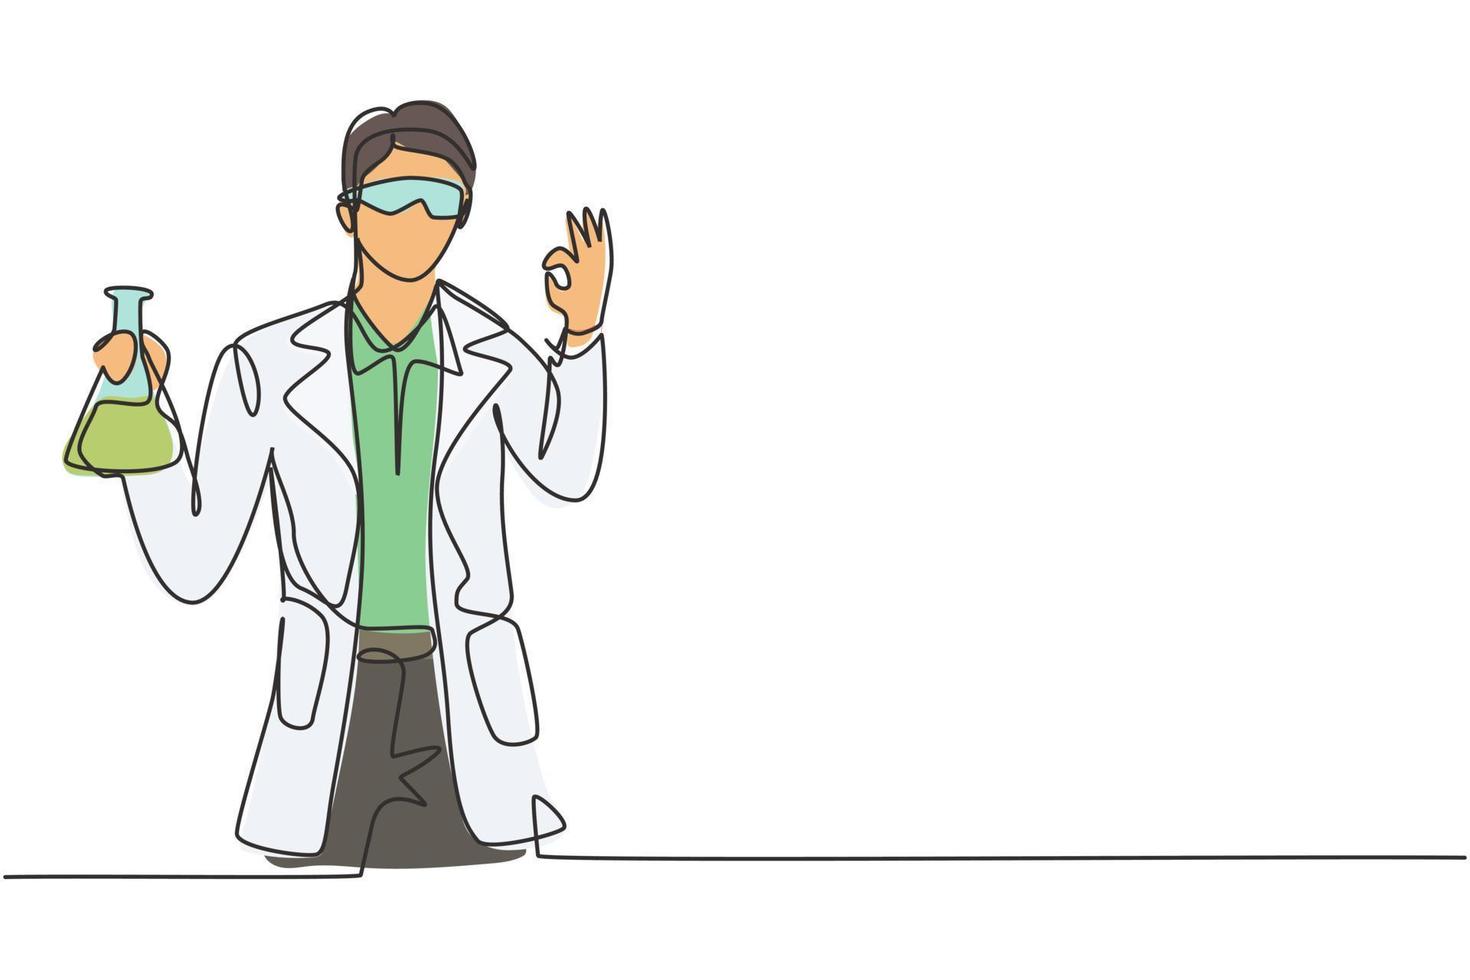 Einzelzeichnung eines männlichen Wissenschaftlers mit Geste in Ordnung und Halten des Messrohrs zur Untersuchung der chemischen Lösung zur Herstellung eines Impfstoffs. moderne durchgehende Linie zeichnen Design-Grafik-Vektor-Illustration vektor